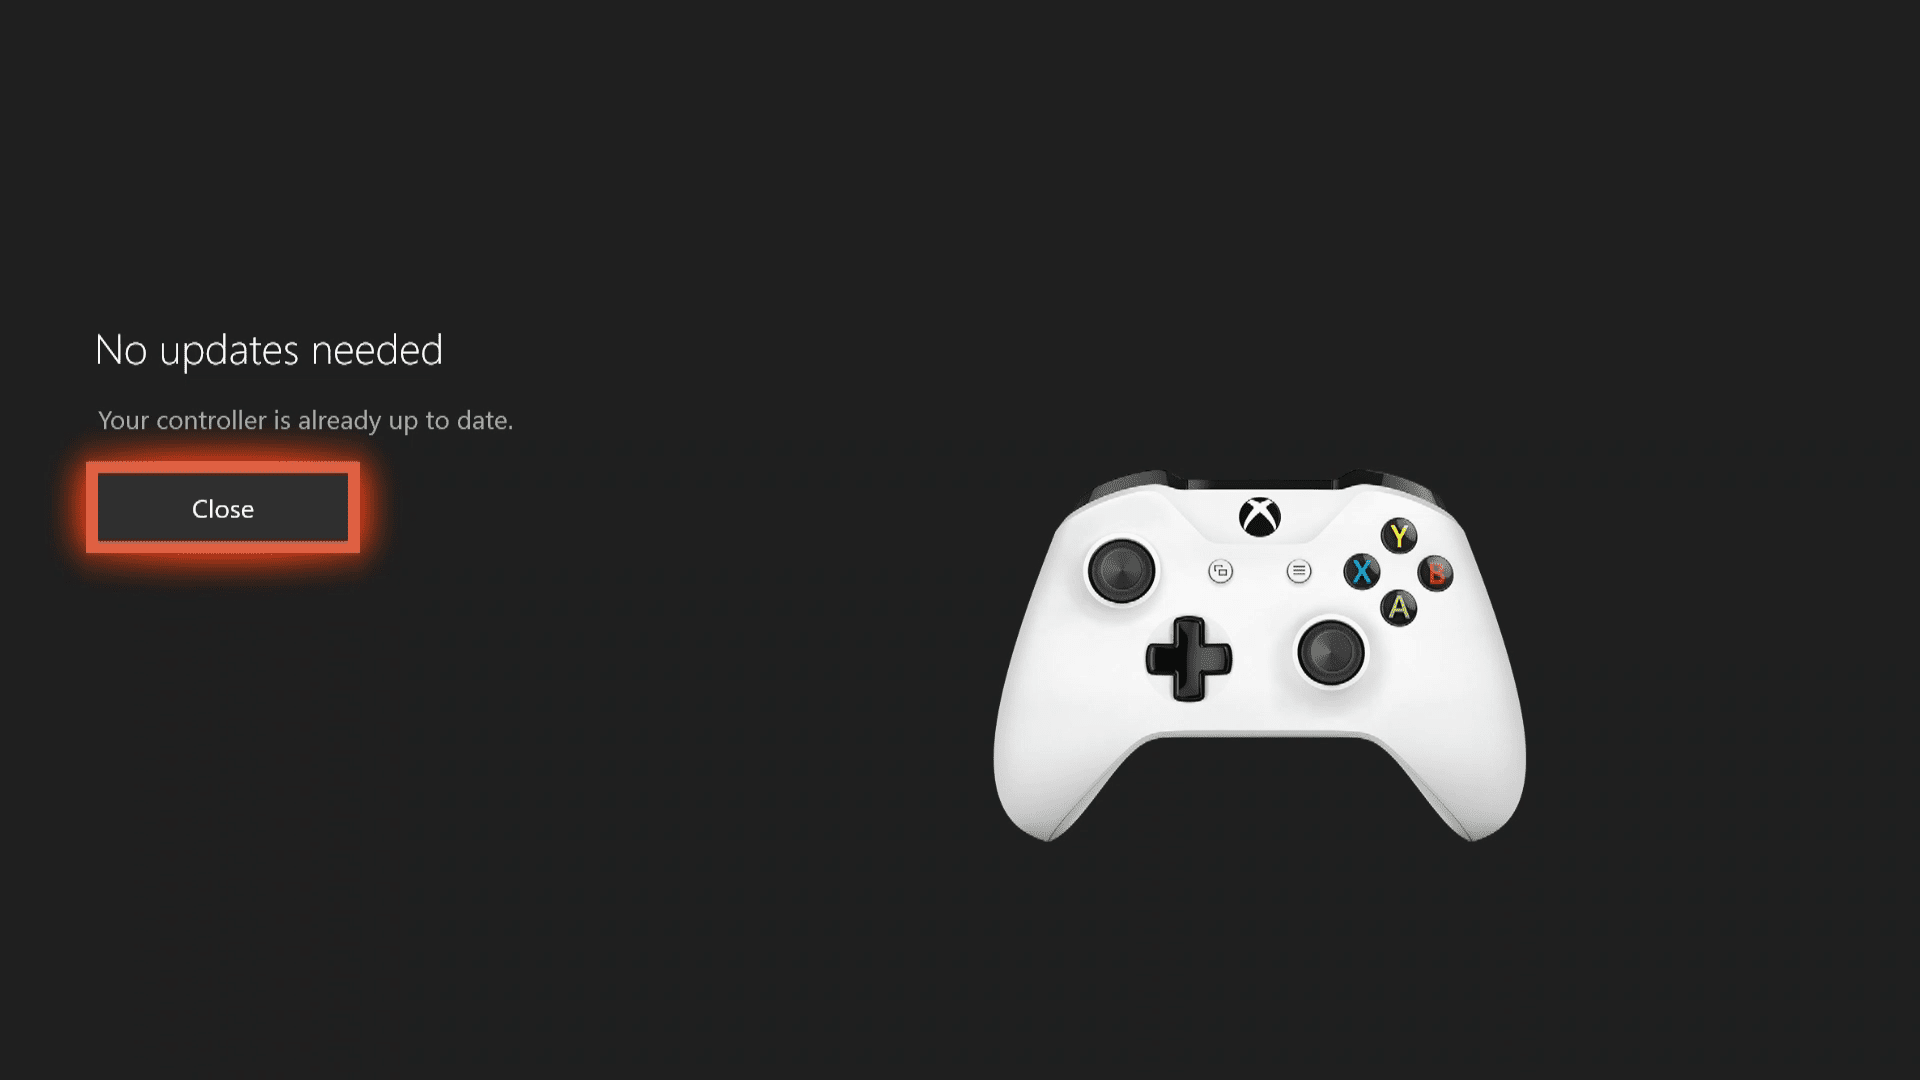 Снимок экрана завершения обновления контроллера Xbox one.